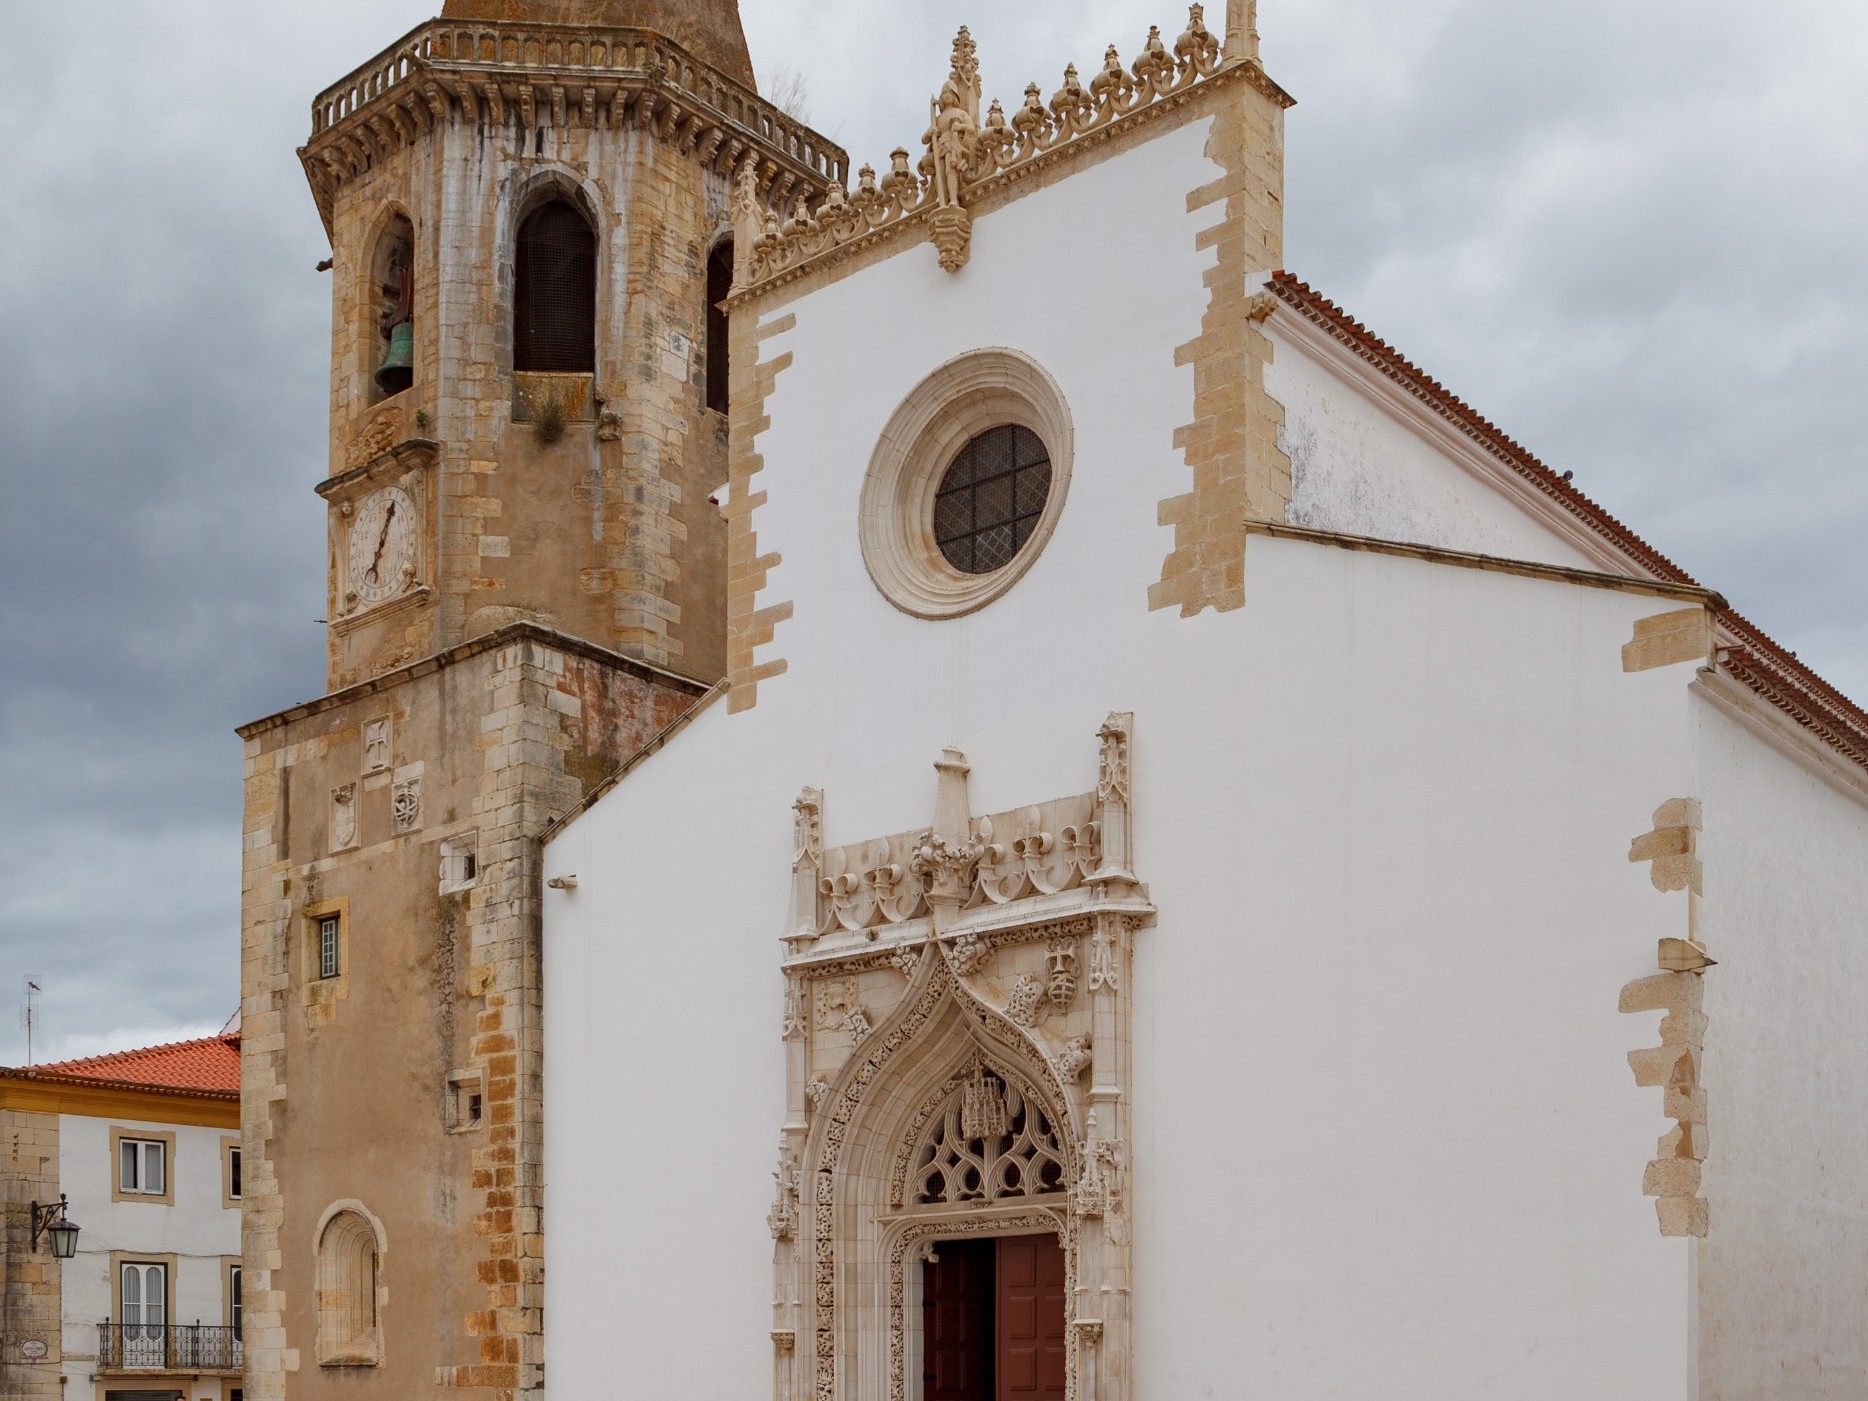 Igreja e torre - A Igreja apresenta uma planta retangular, estruturada em três naves e com uma torre sineira com um relógio do século XVI. Os seus portais são luxuosamente decorados ao estilo manuelino.